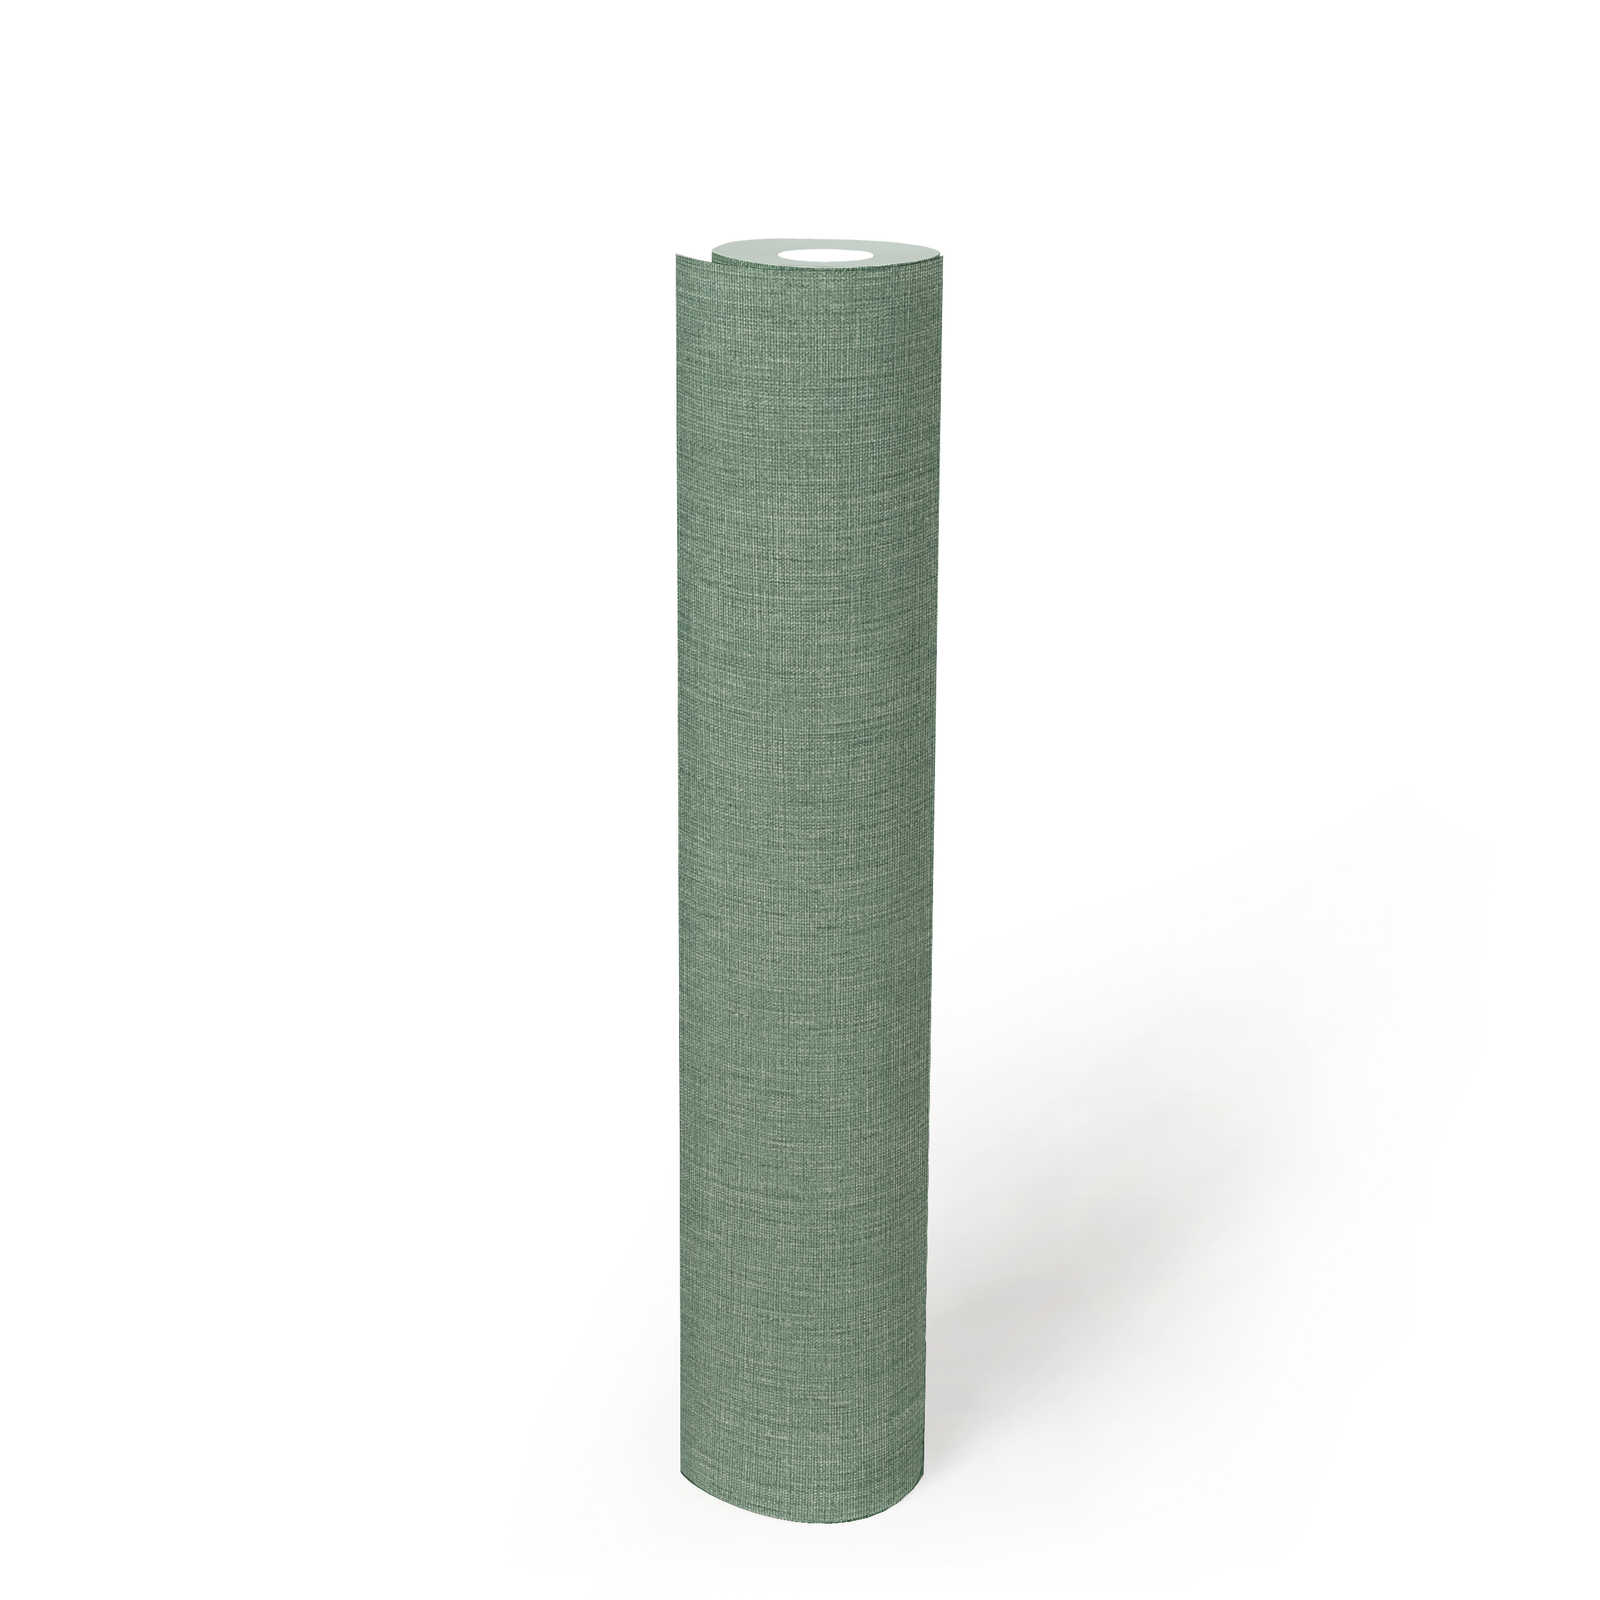             Eenheidsbehang in textiellook met textuur - groen
        